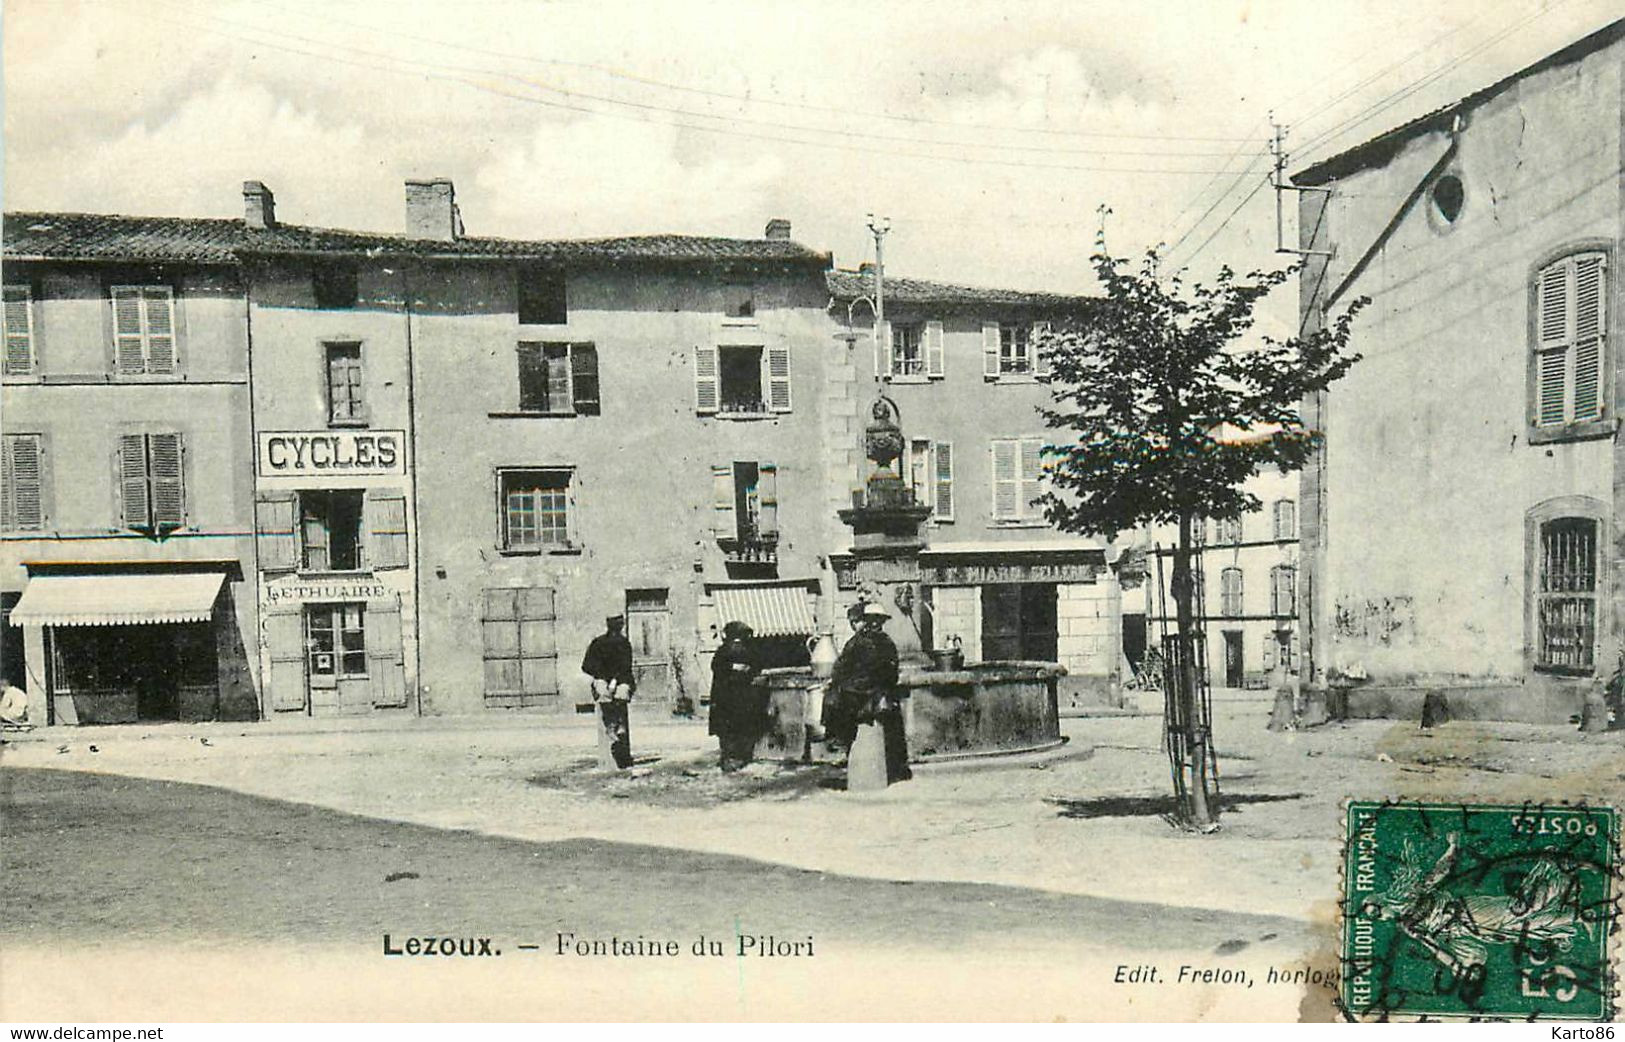 Lezoux * 1909 * Place Et Fontaine Du Pilori * Magasin Cycles LETHUAIRE * Sellerie Sellier MIARD - Lezoux